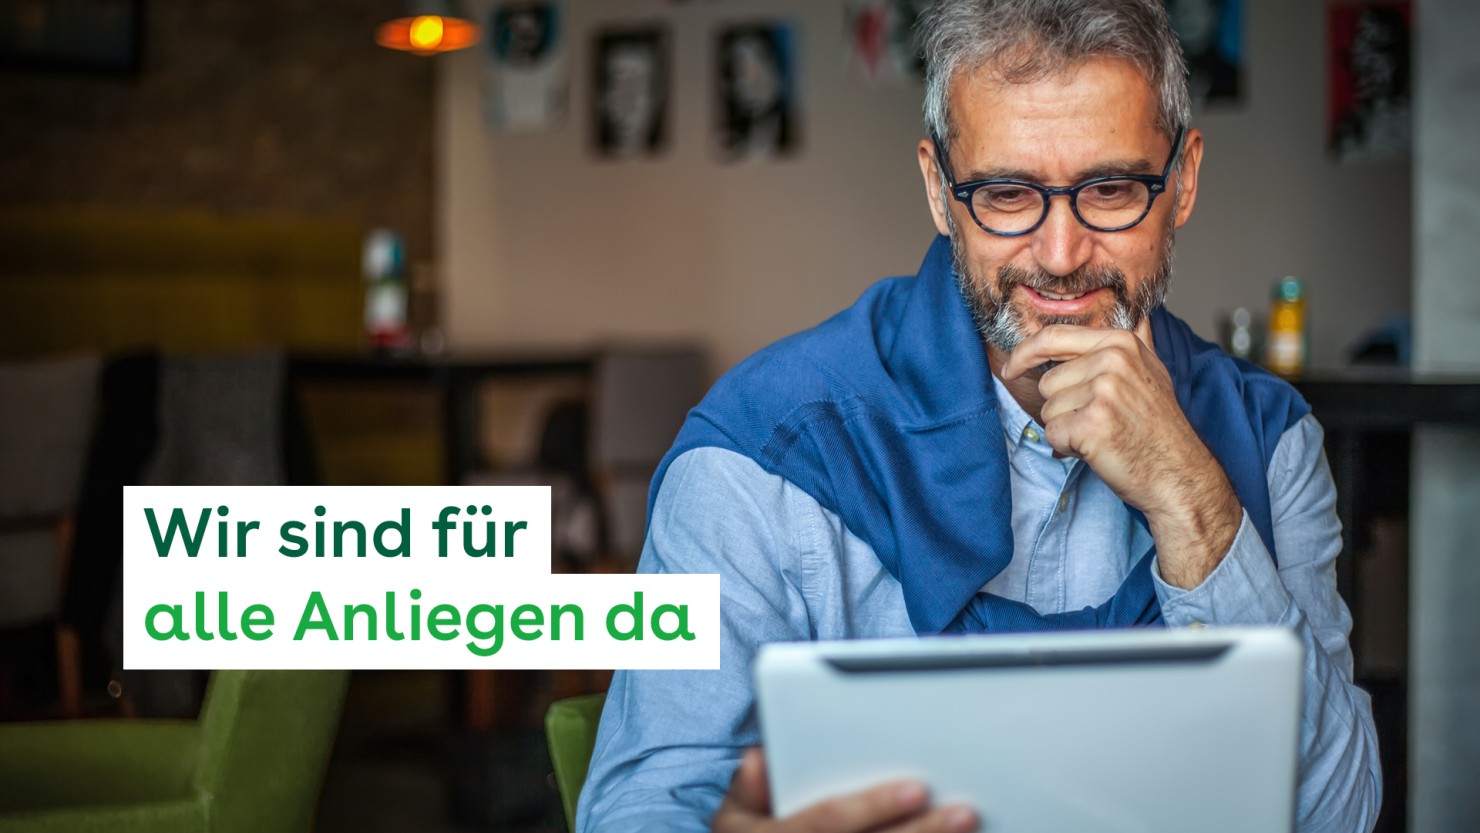 Ein etwa 55-jähriger Mann nutzt auf einem Tablet die Online-Services der AOK Sachsen-Anhalt. Er sitzt in einem Café, hält die linke Hand ans Kinn und lächelt.